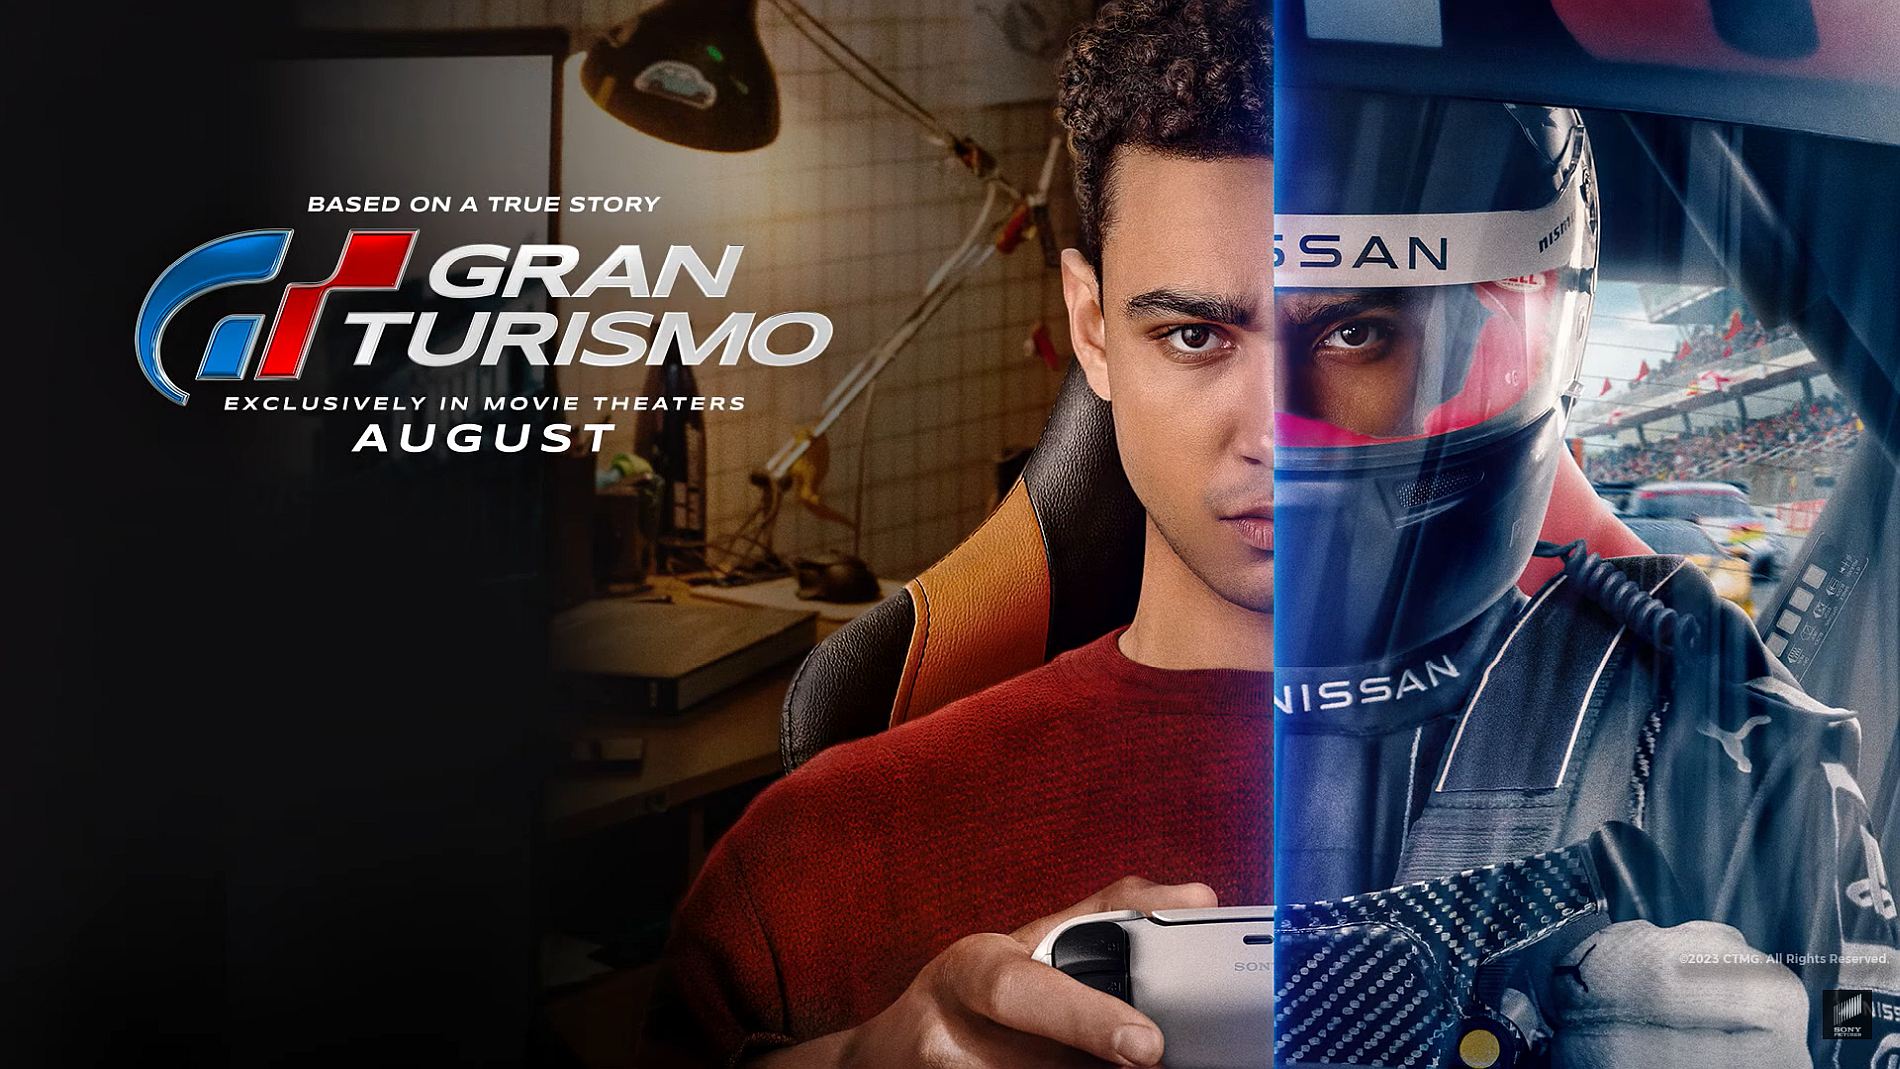 Nissan faz competição de Gran Turismo para promover filme - Live Marketing